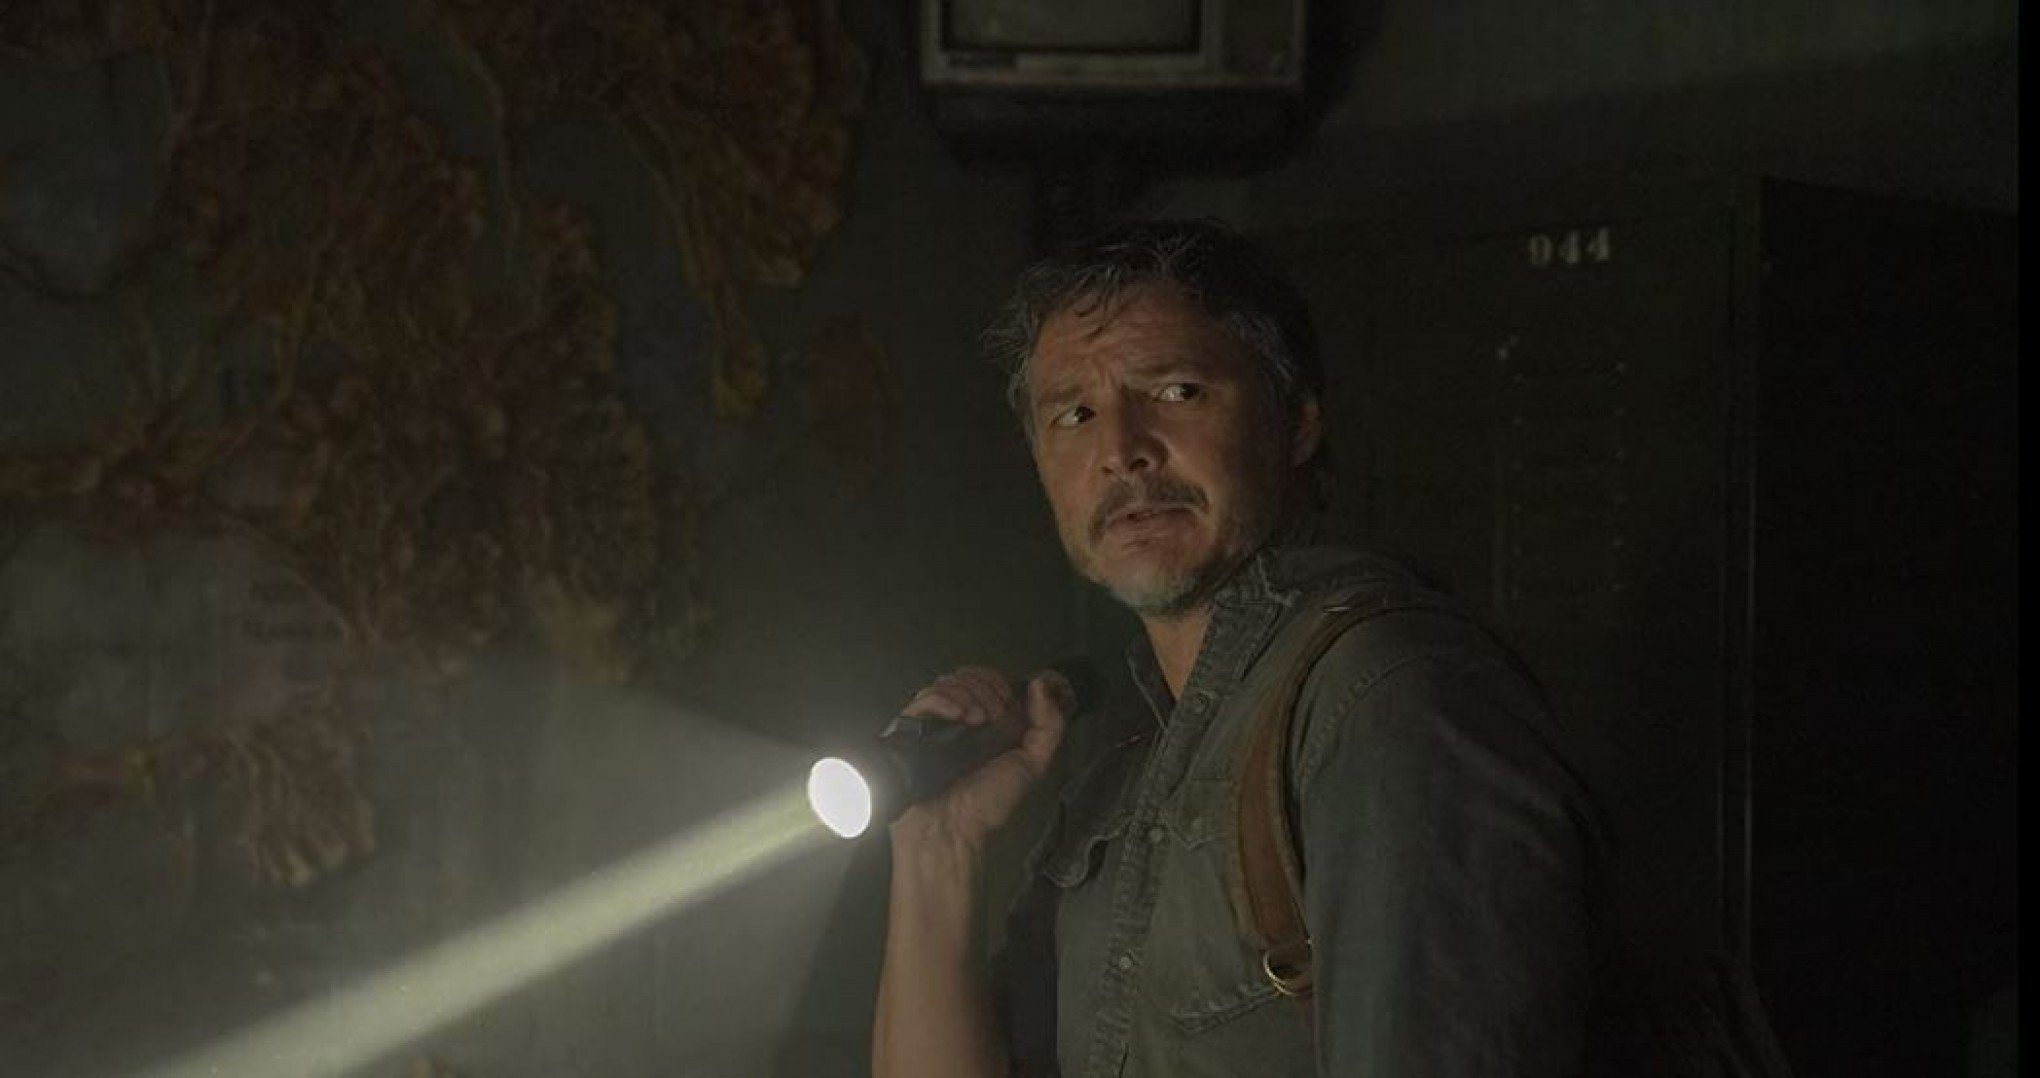 Próximo episódio de The Last of Us terá exibição antecipada no HBO Max